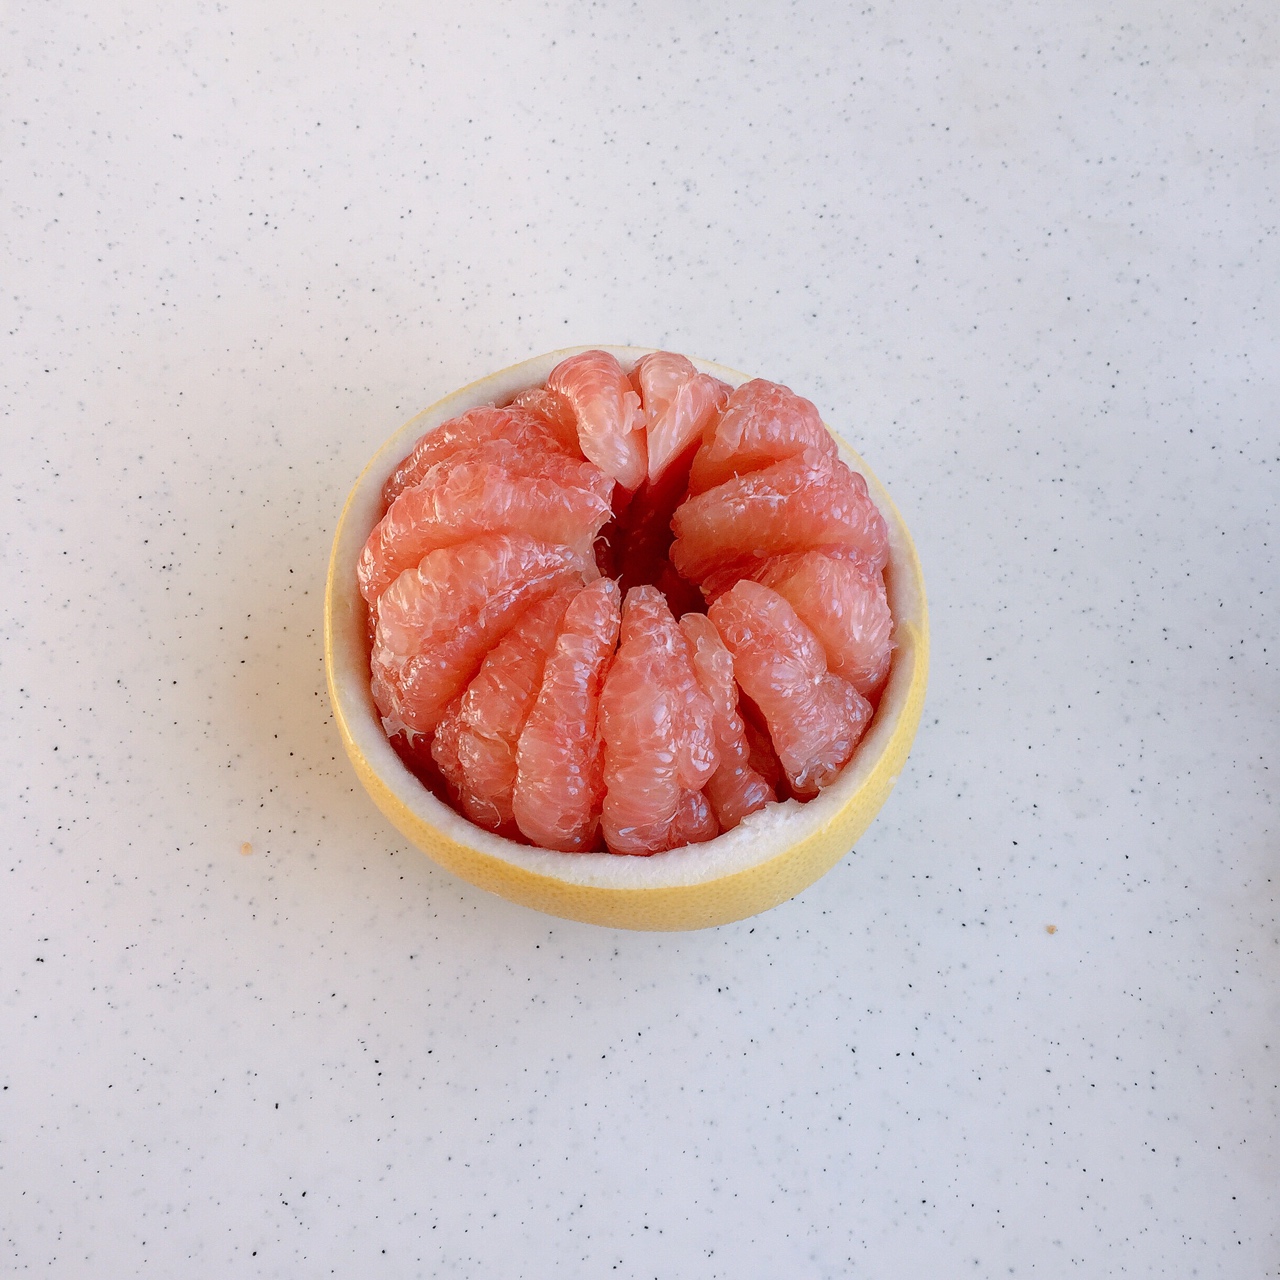 完美剥柚子大法……